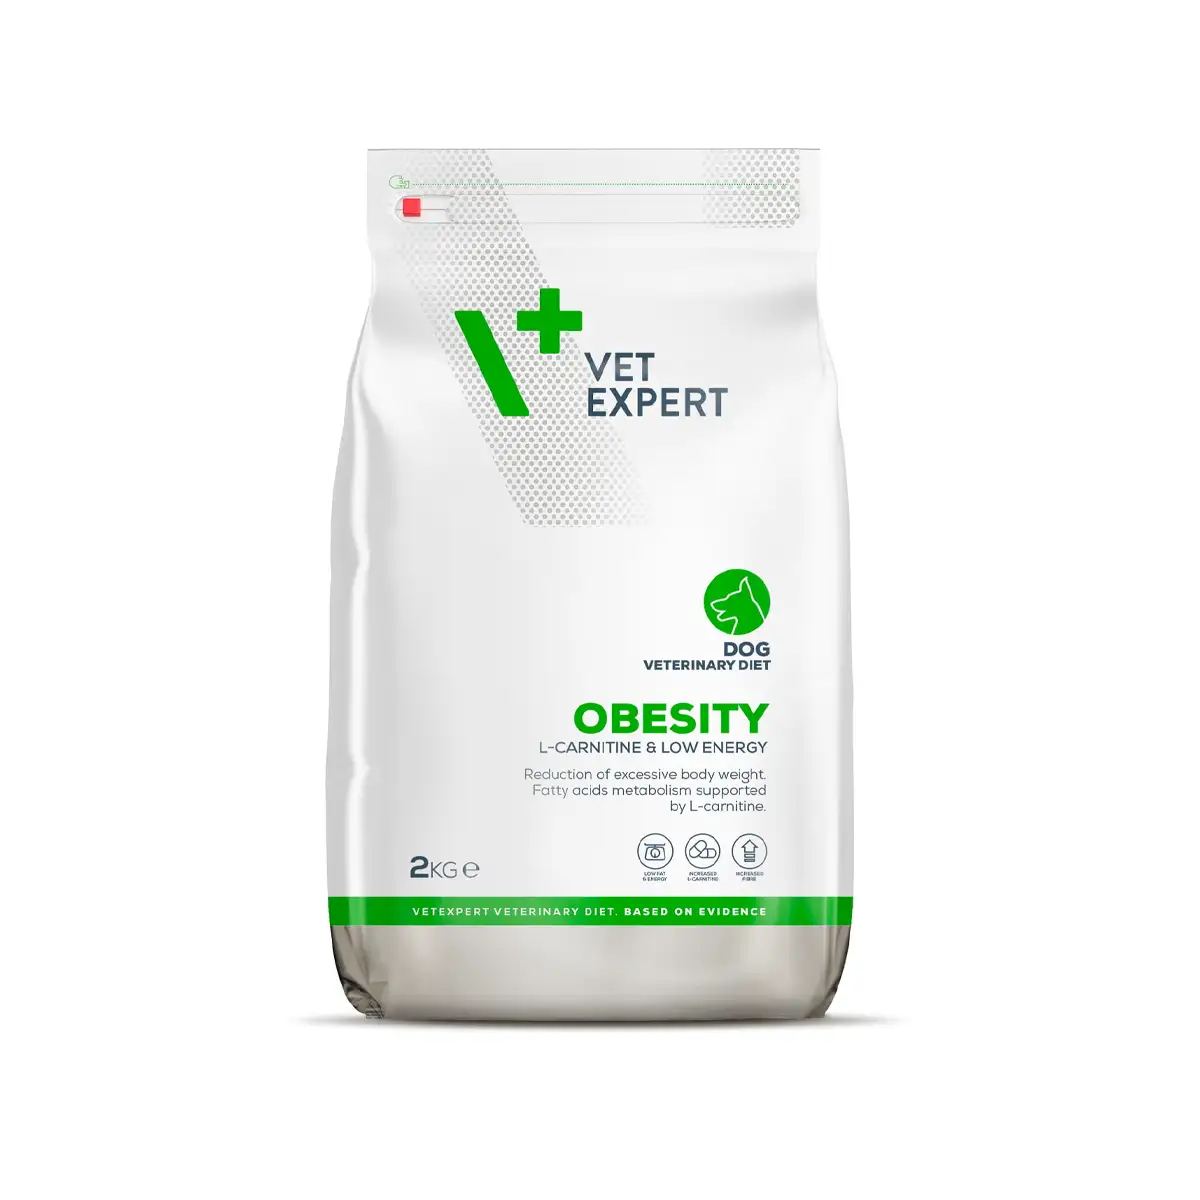 Vet Expert V+ Obesity Dog Dry Food 2kg